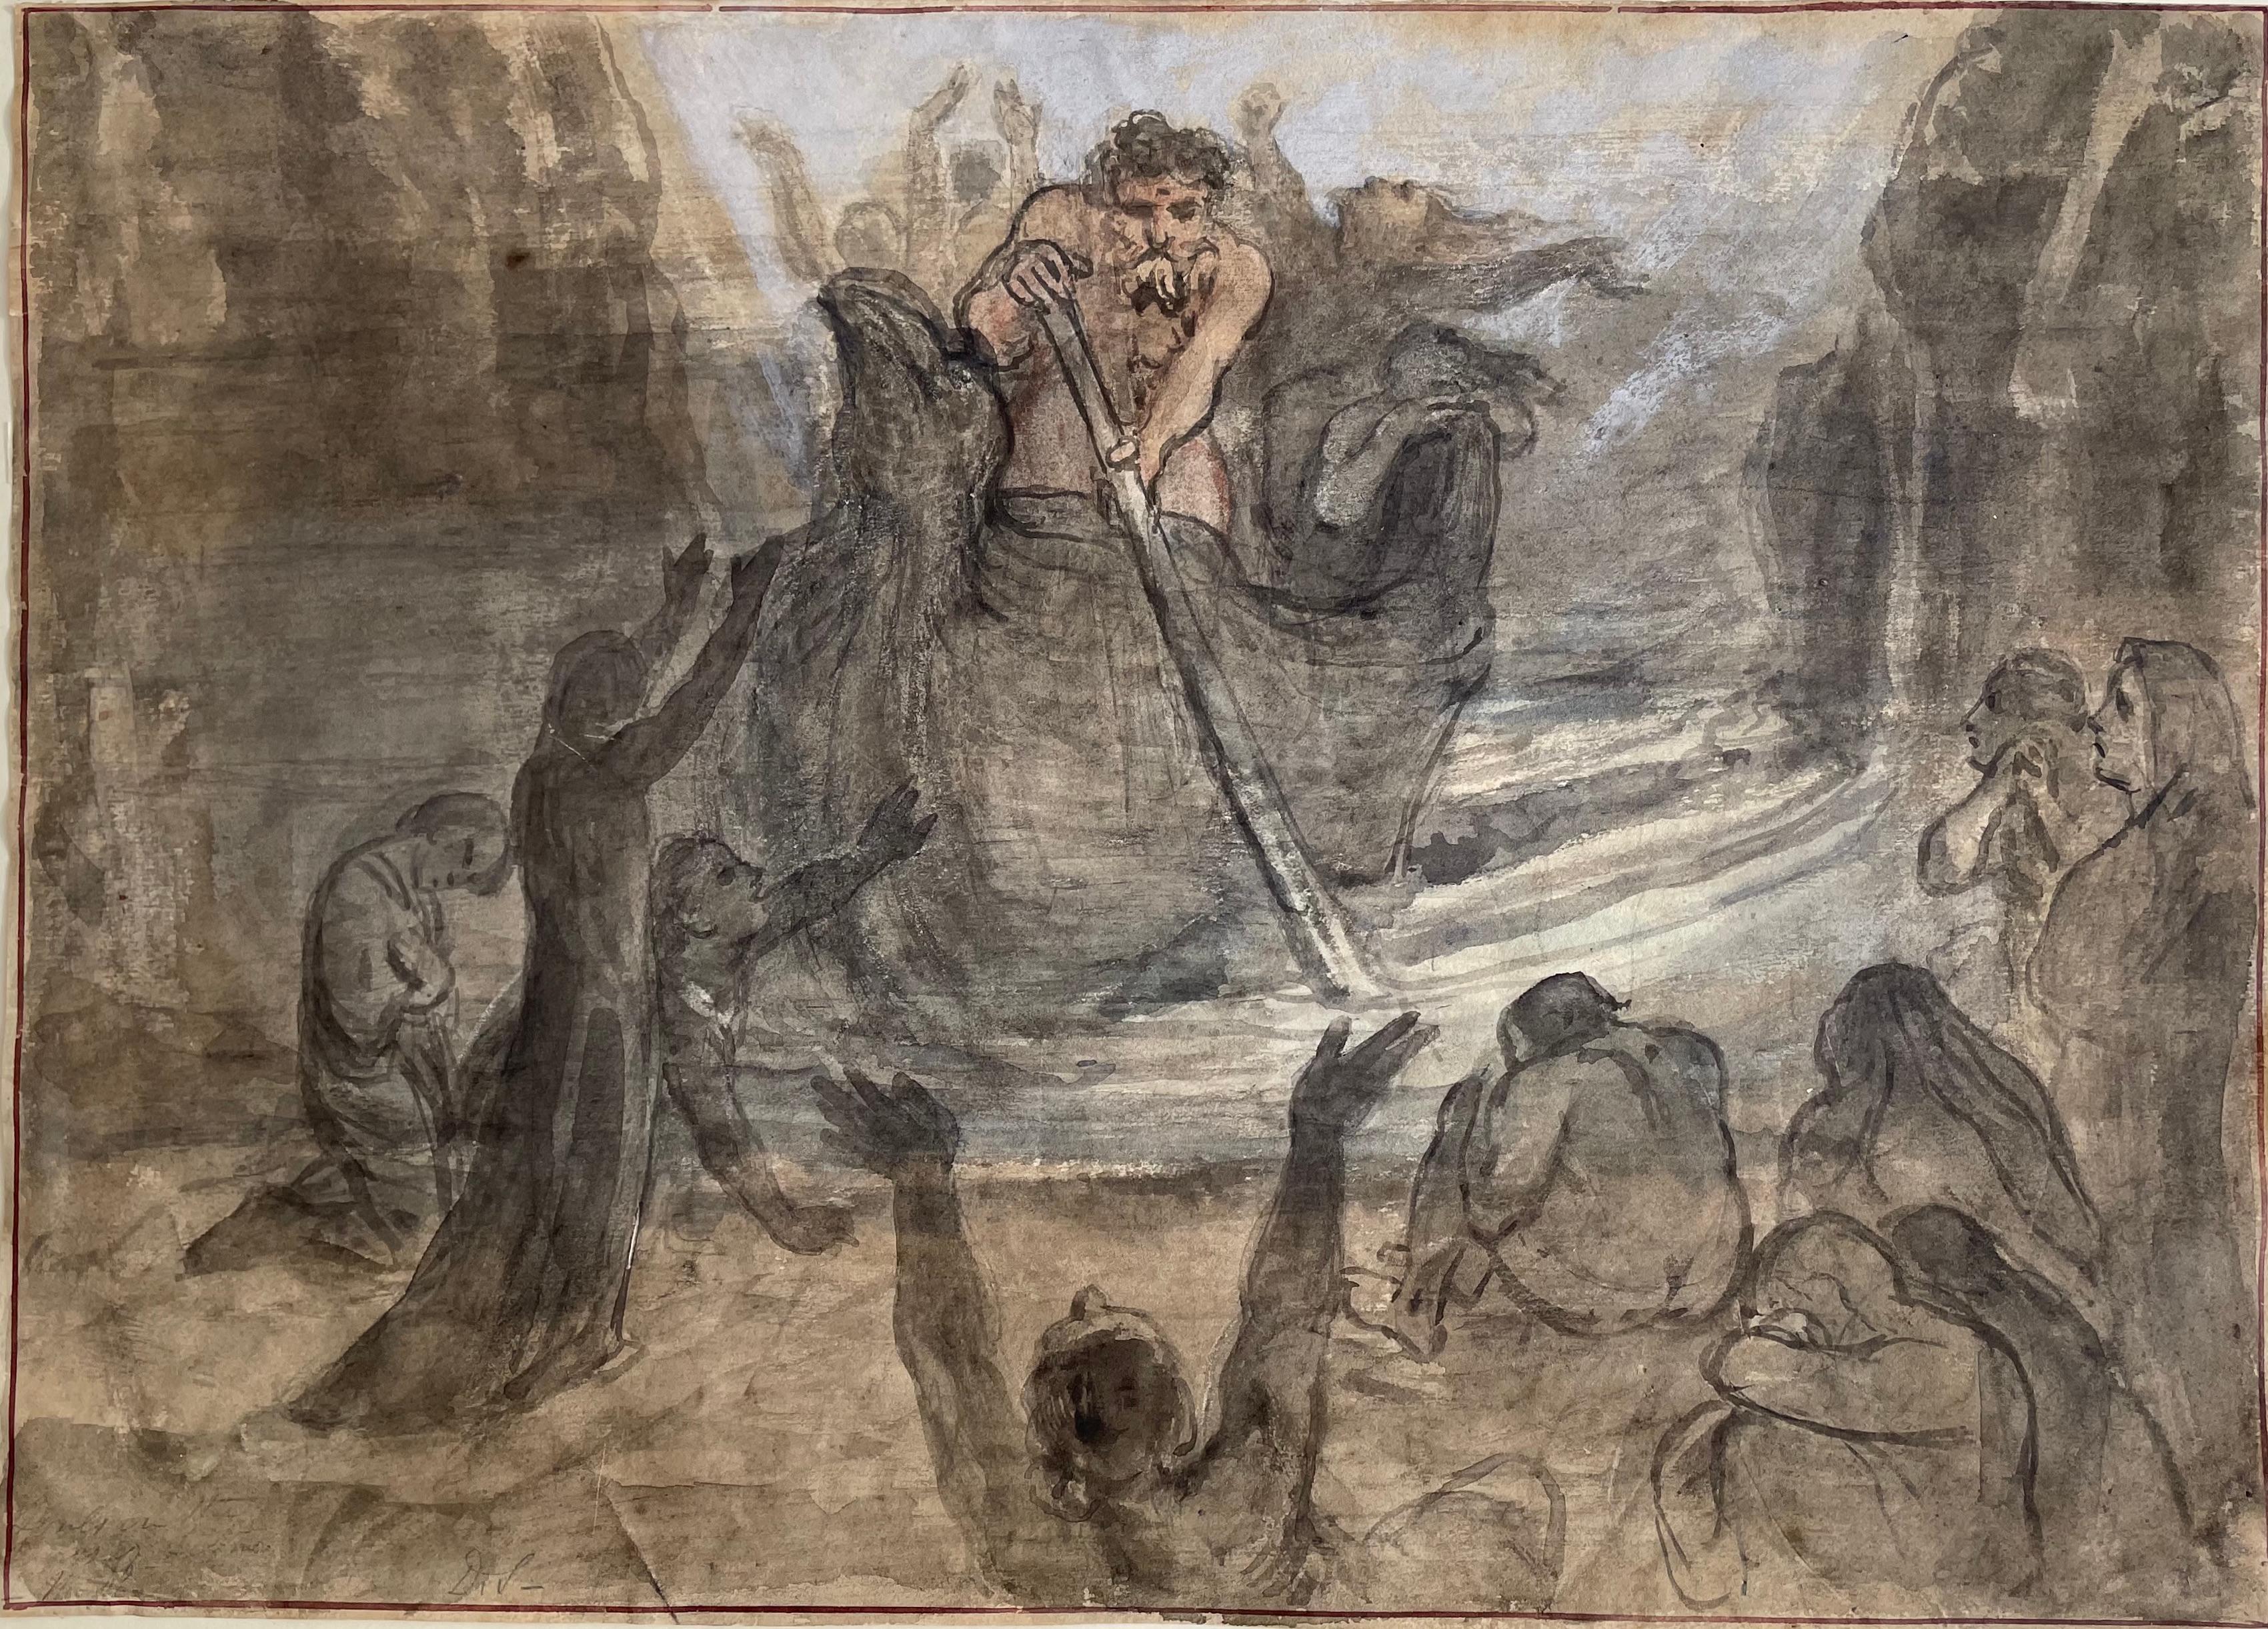 Charon's Ferry – schottisches romantisches Aquarell von David Scott aus dem frühen 19. Jahrhundert